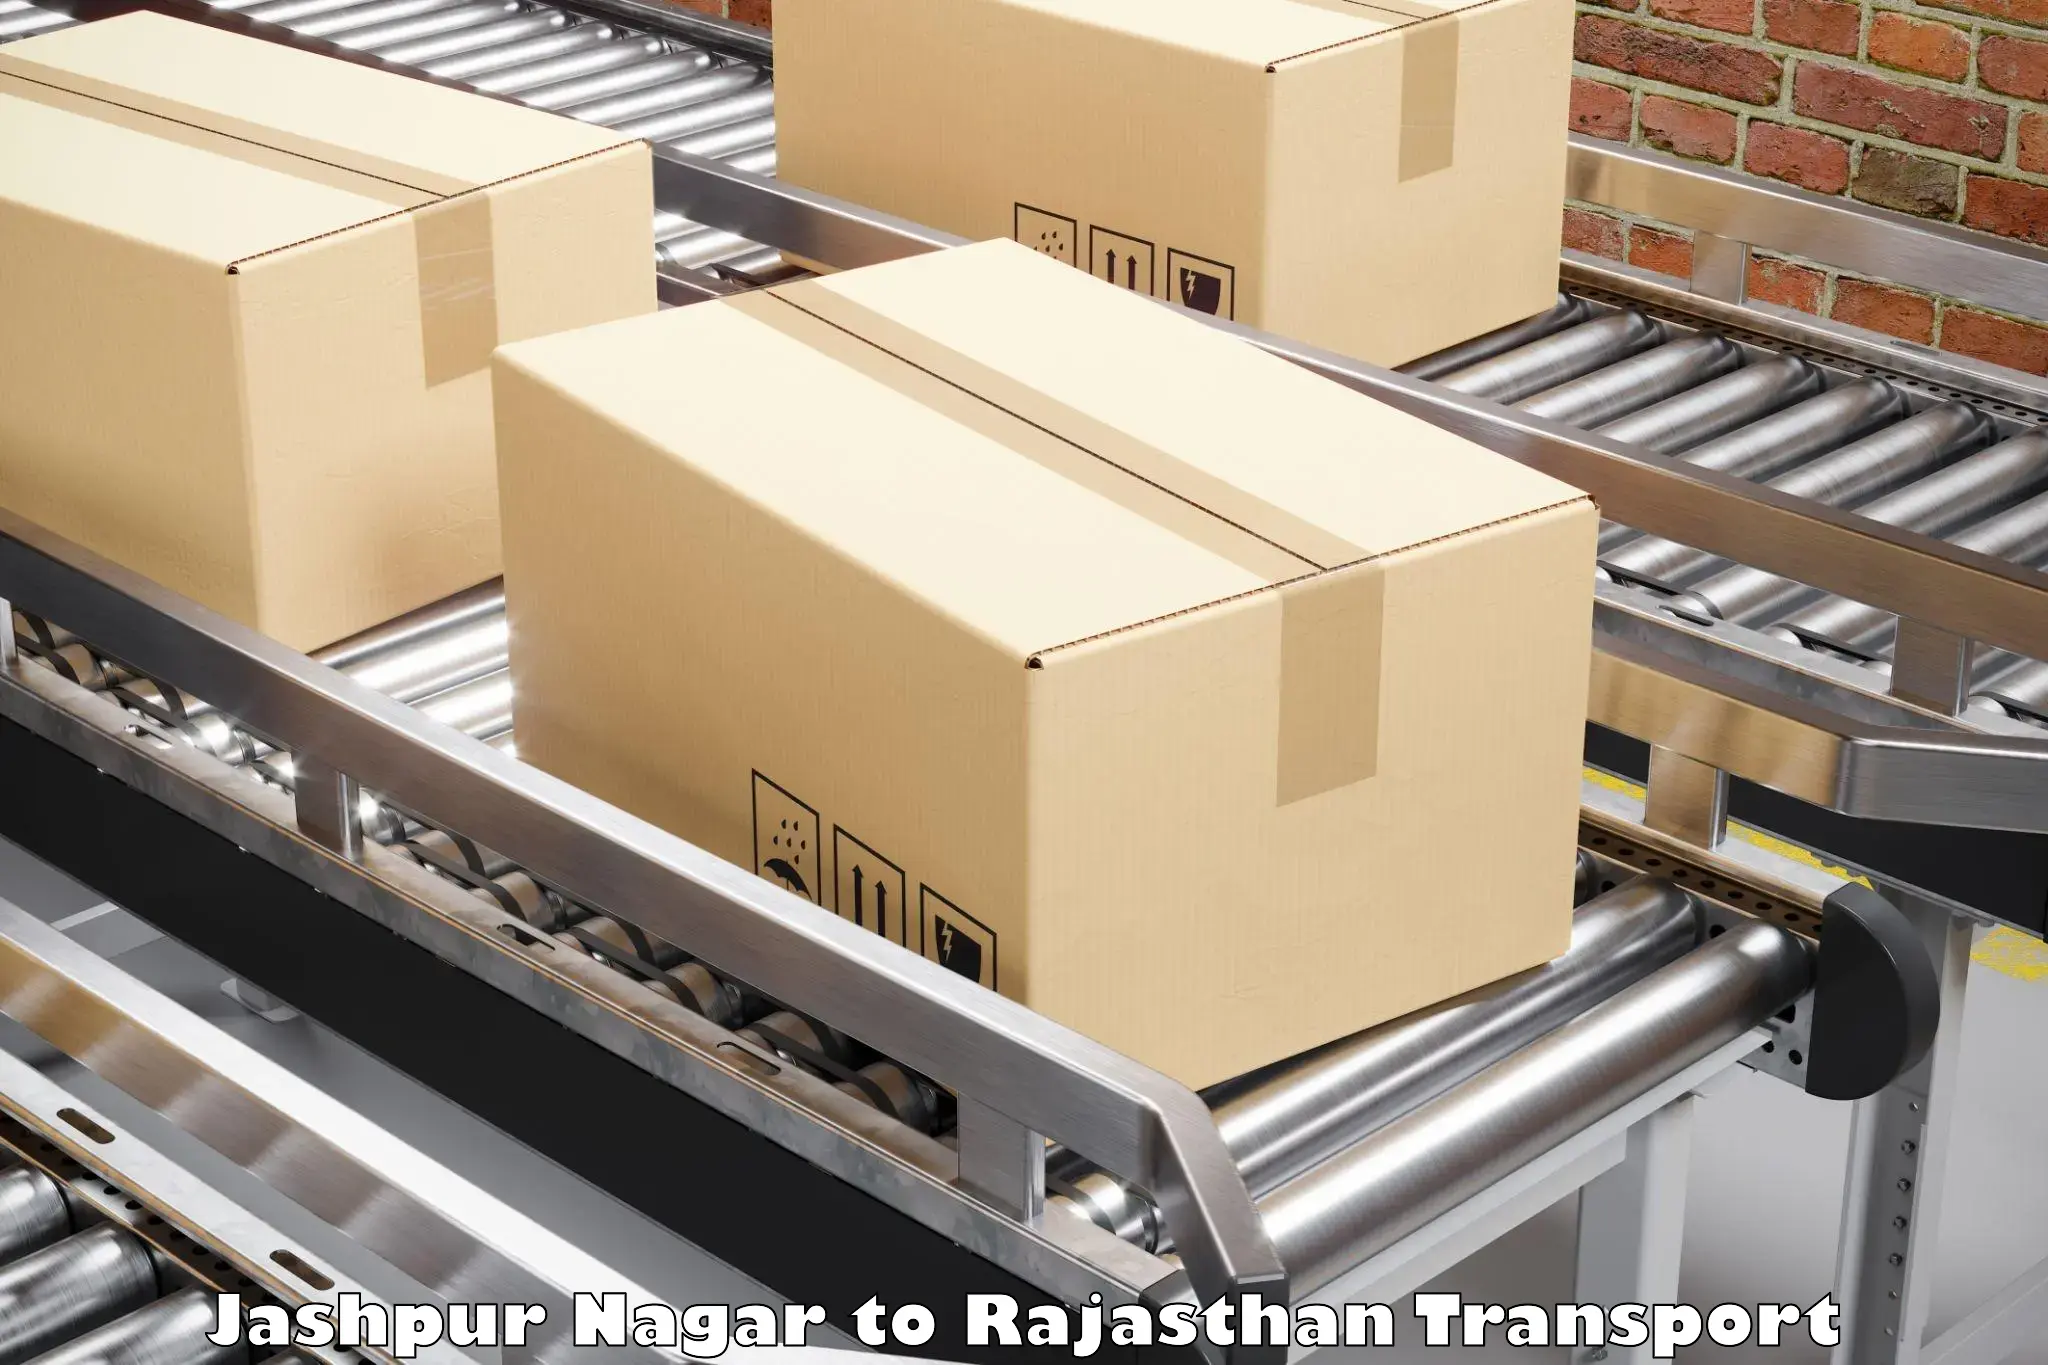 Transport shared services Jashpur Nagar to Rajasthan